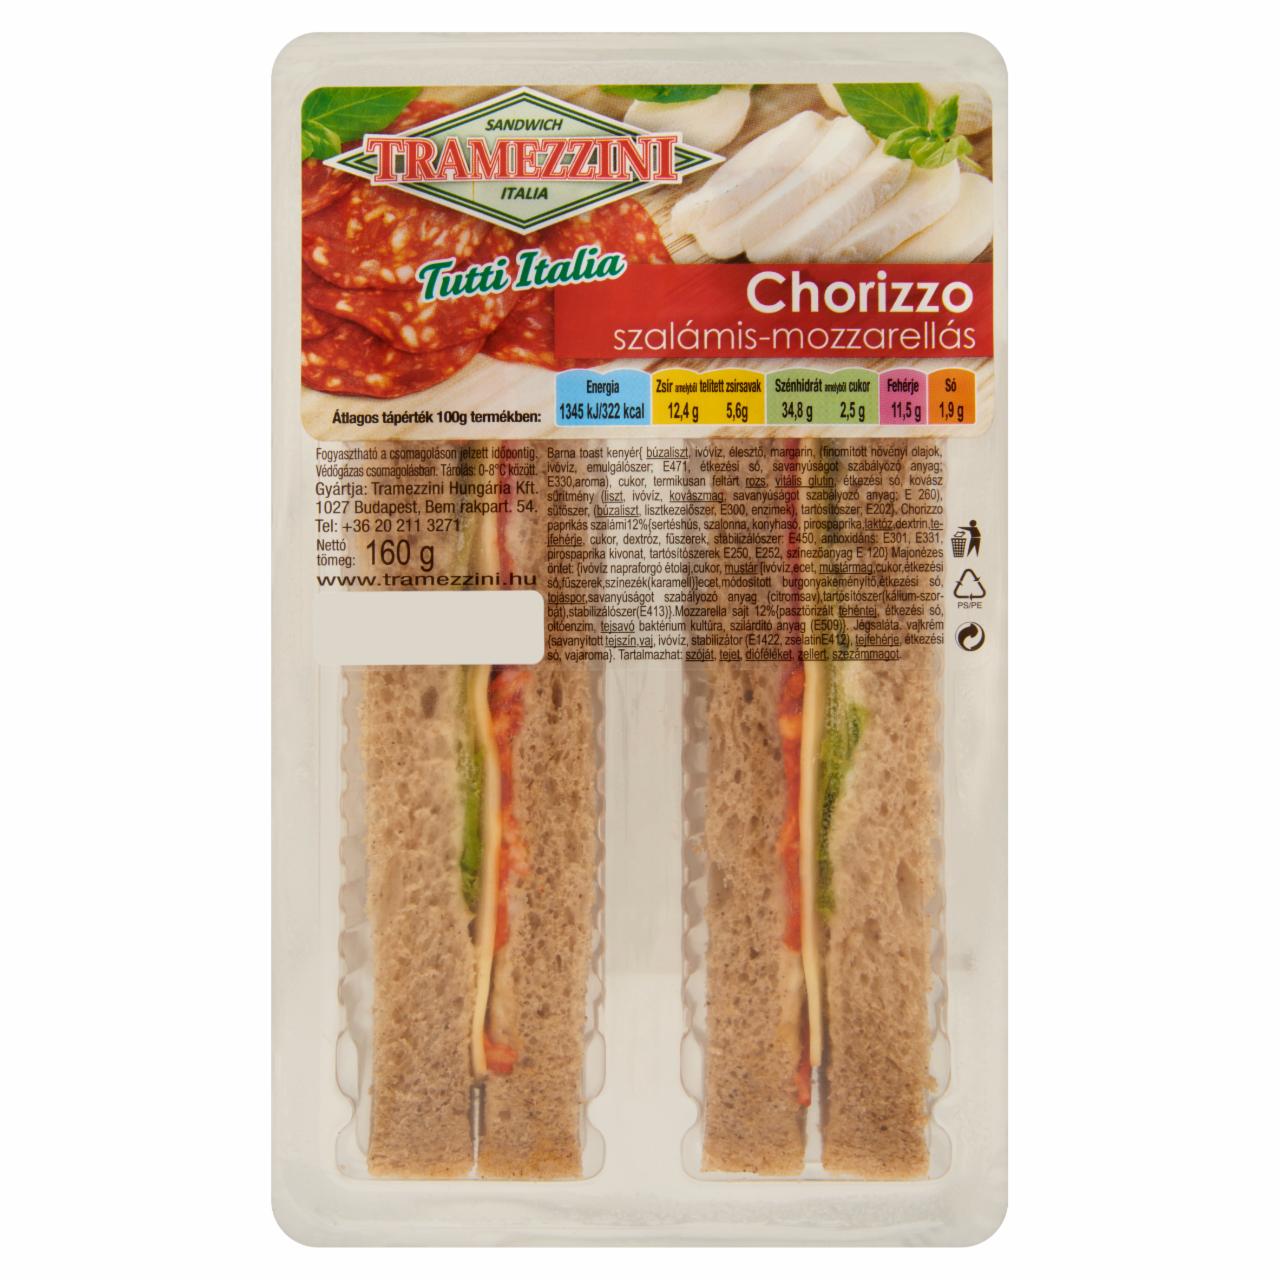 Képek - Chorizzo szalámis-mozzarellás szendvics Tramezzini